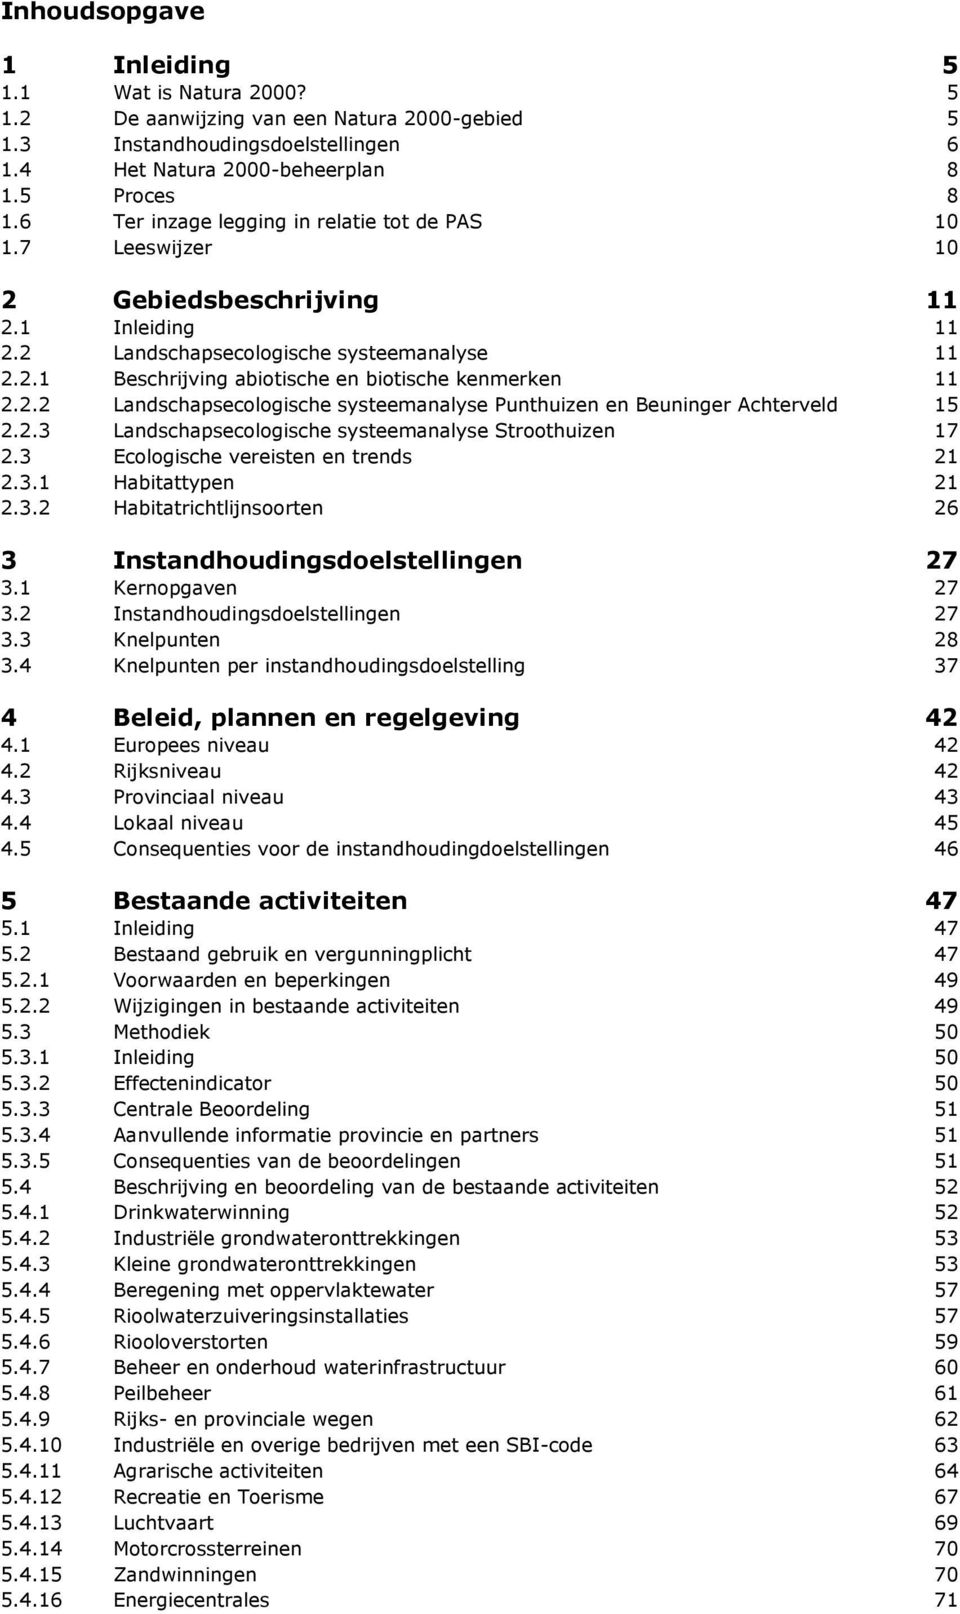 2.2 Landschapsecologische systeemanalyse Punthuizen en Beuninger Achterveld 15 2.2.3 Landschapsecologische systeemanalyse Stroothuizen 17 2.3 Ecologische vereisten en trends 21 2.3.1 Habitattypen 21 2.